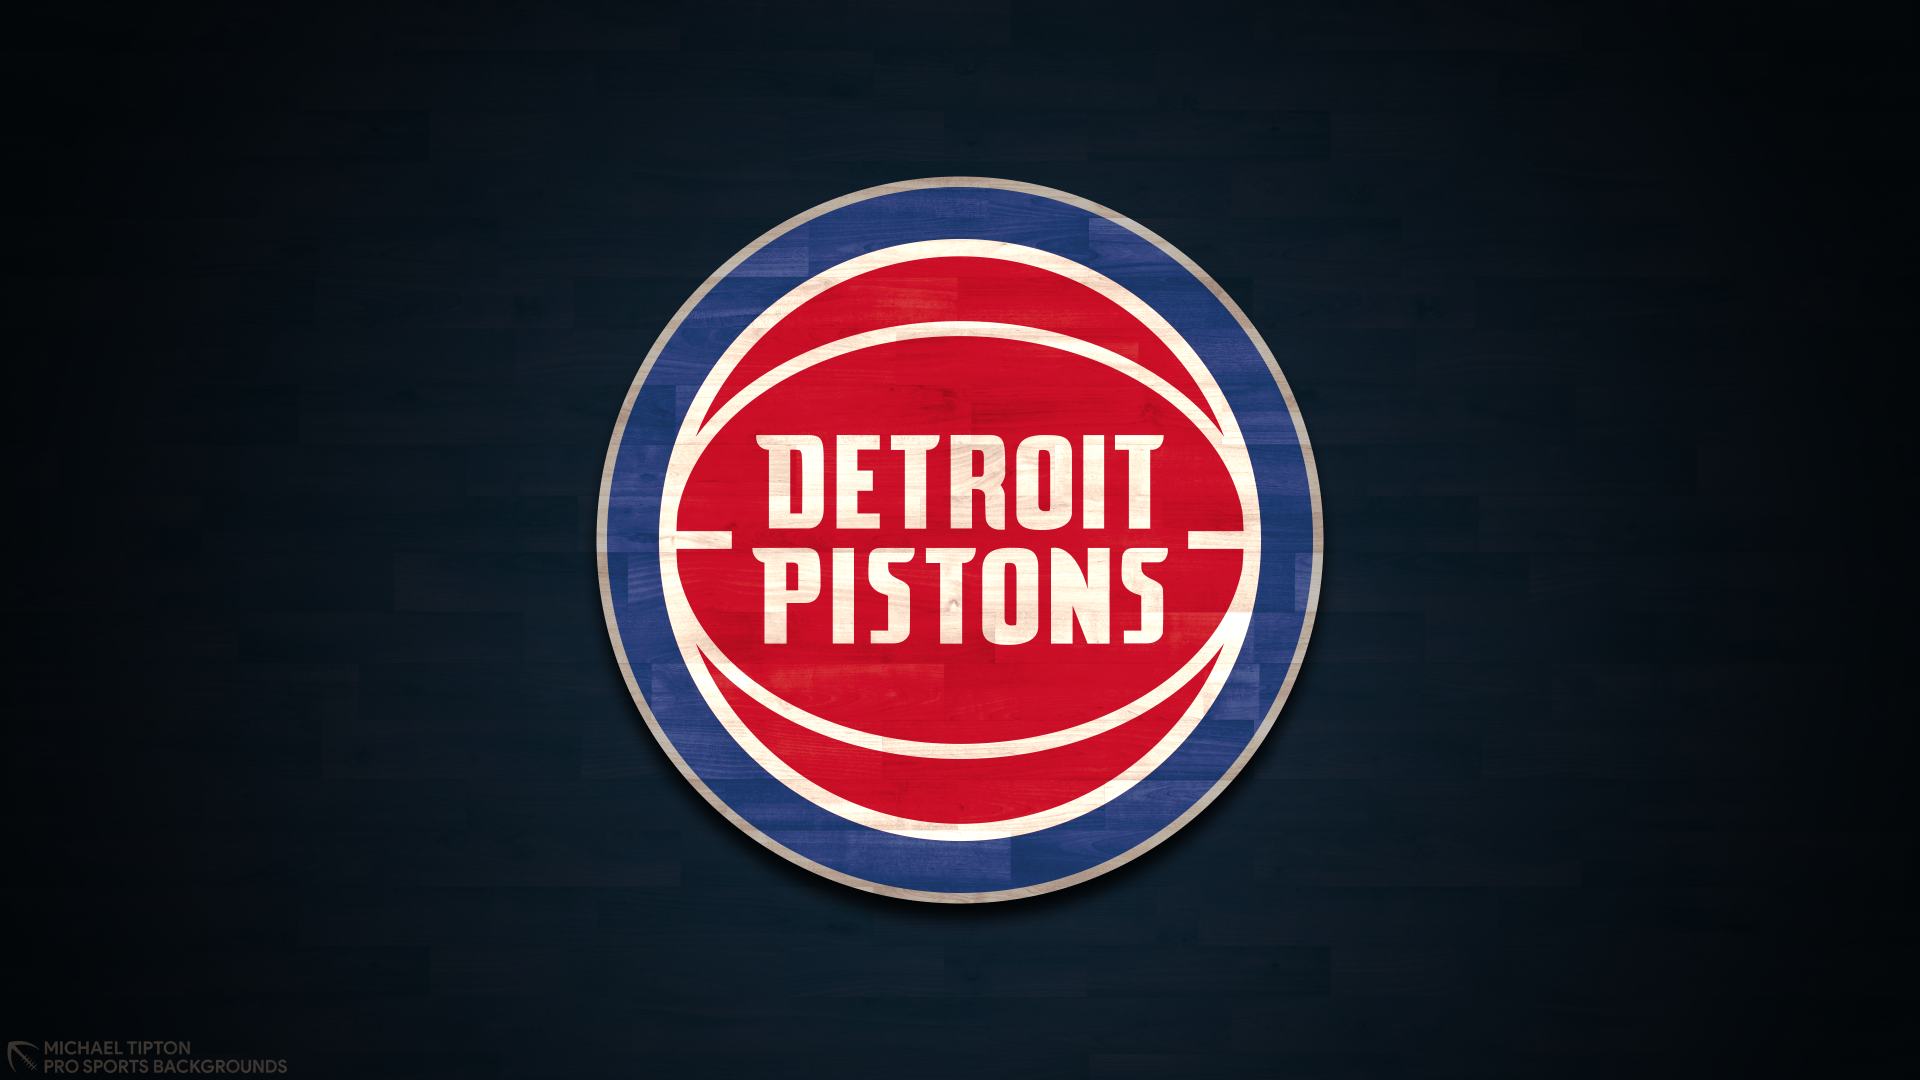 Download Logo Basketball NBA Detroit Pistons Sports  4k Ultra HD Wallpaper by Michael Tipton